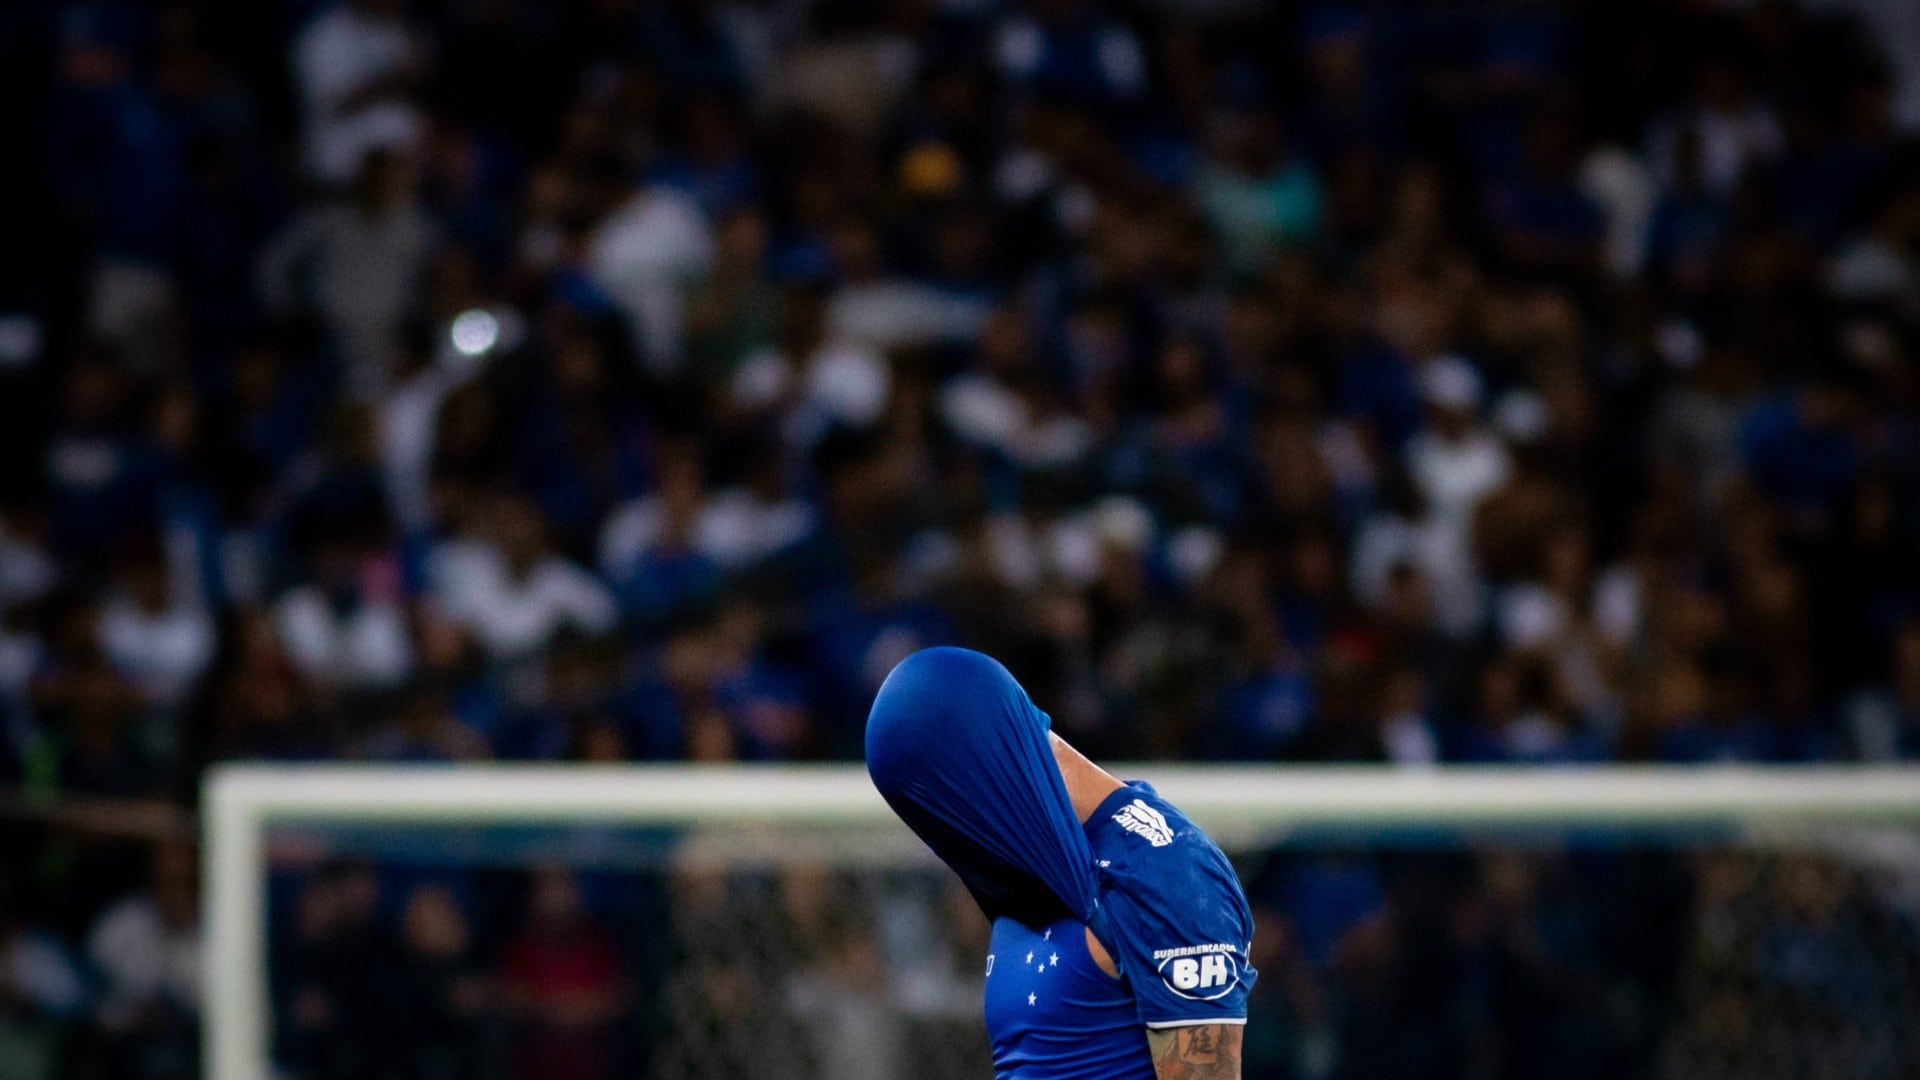 Jogador do Cruzeiro tampando cabeça com camisa durante partida de futebol em estádio